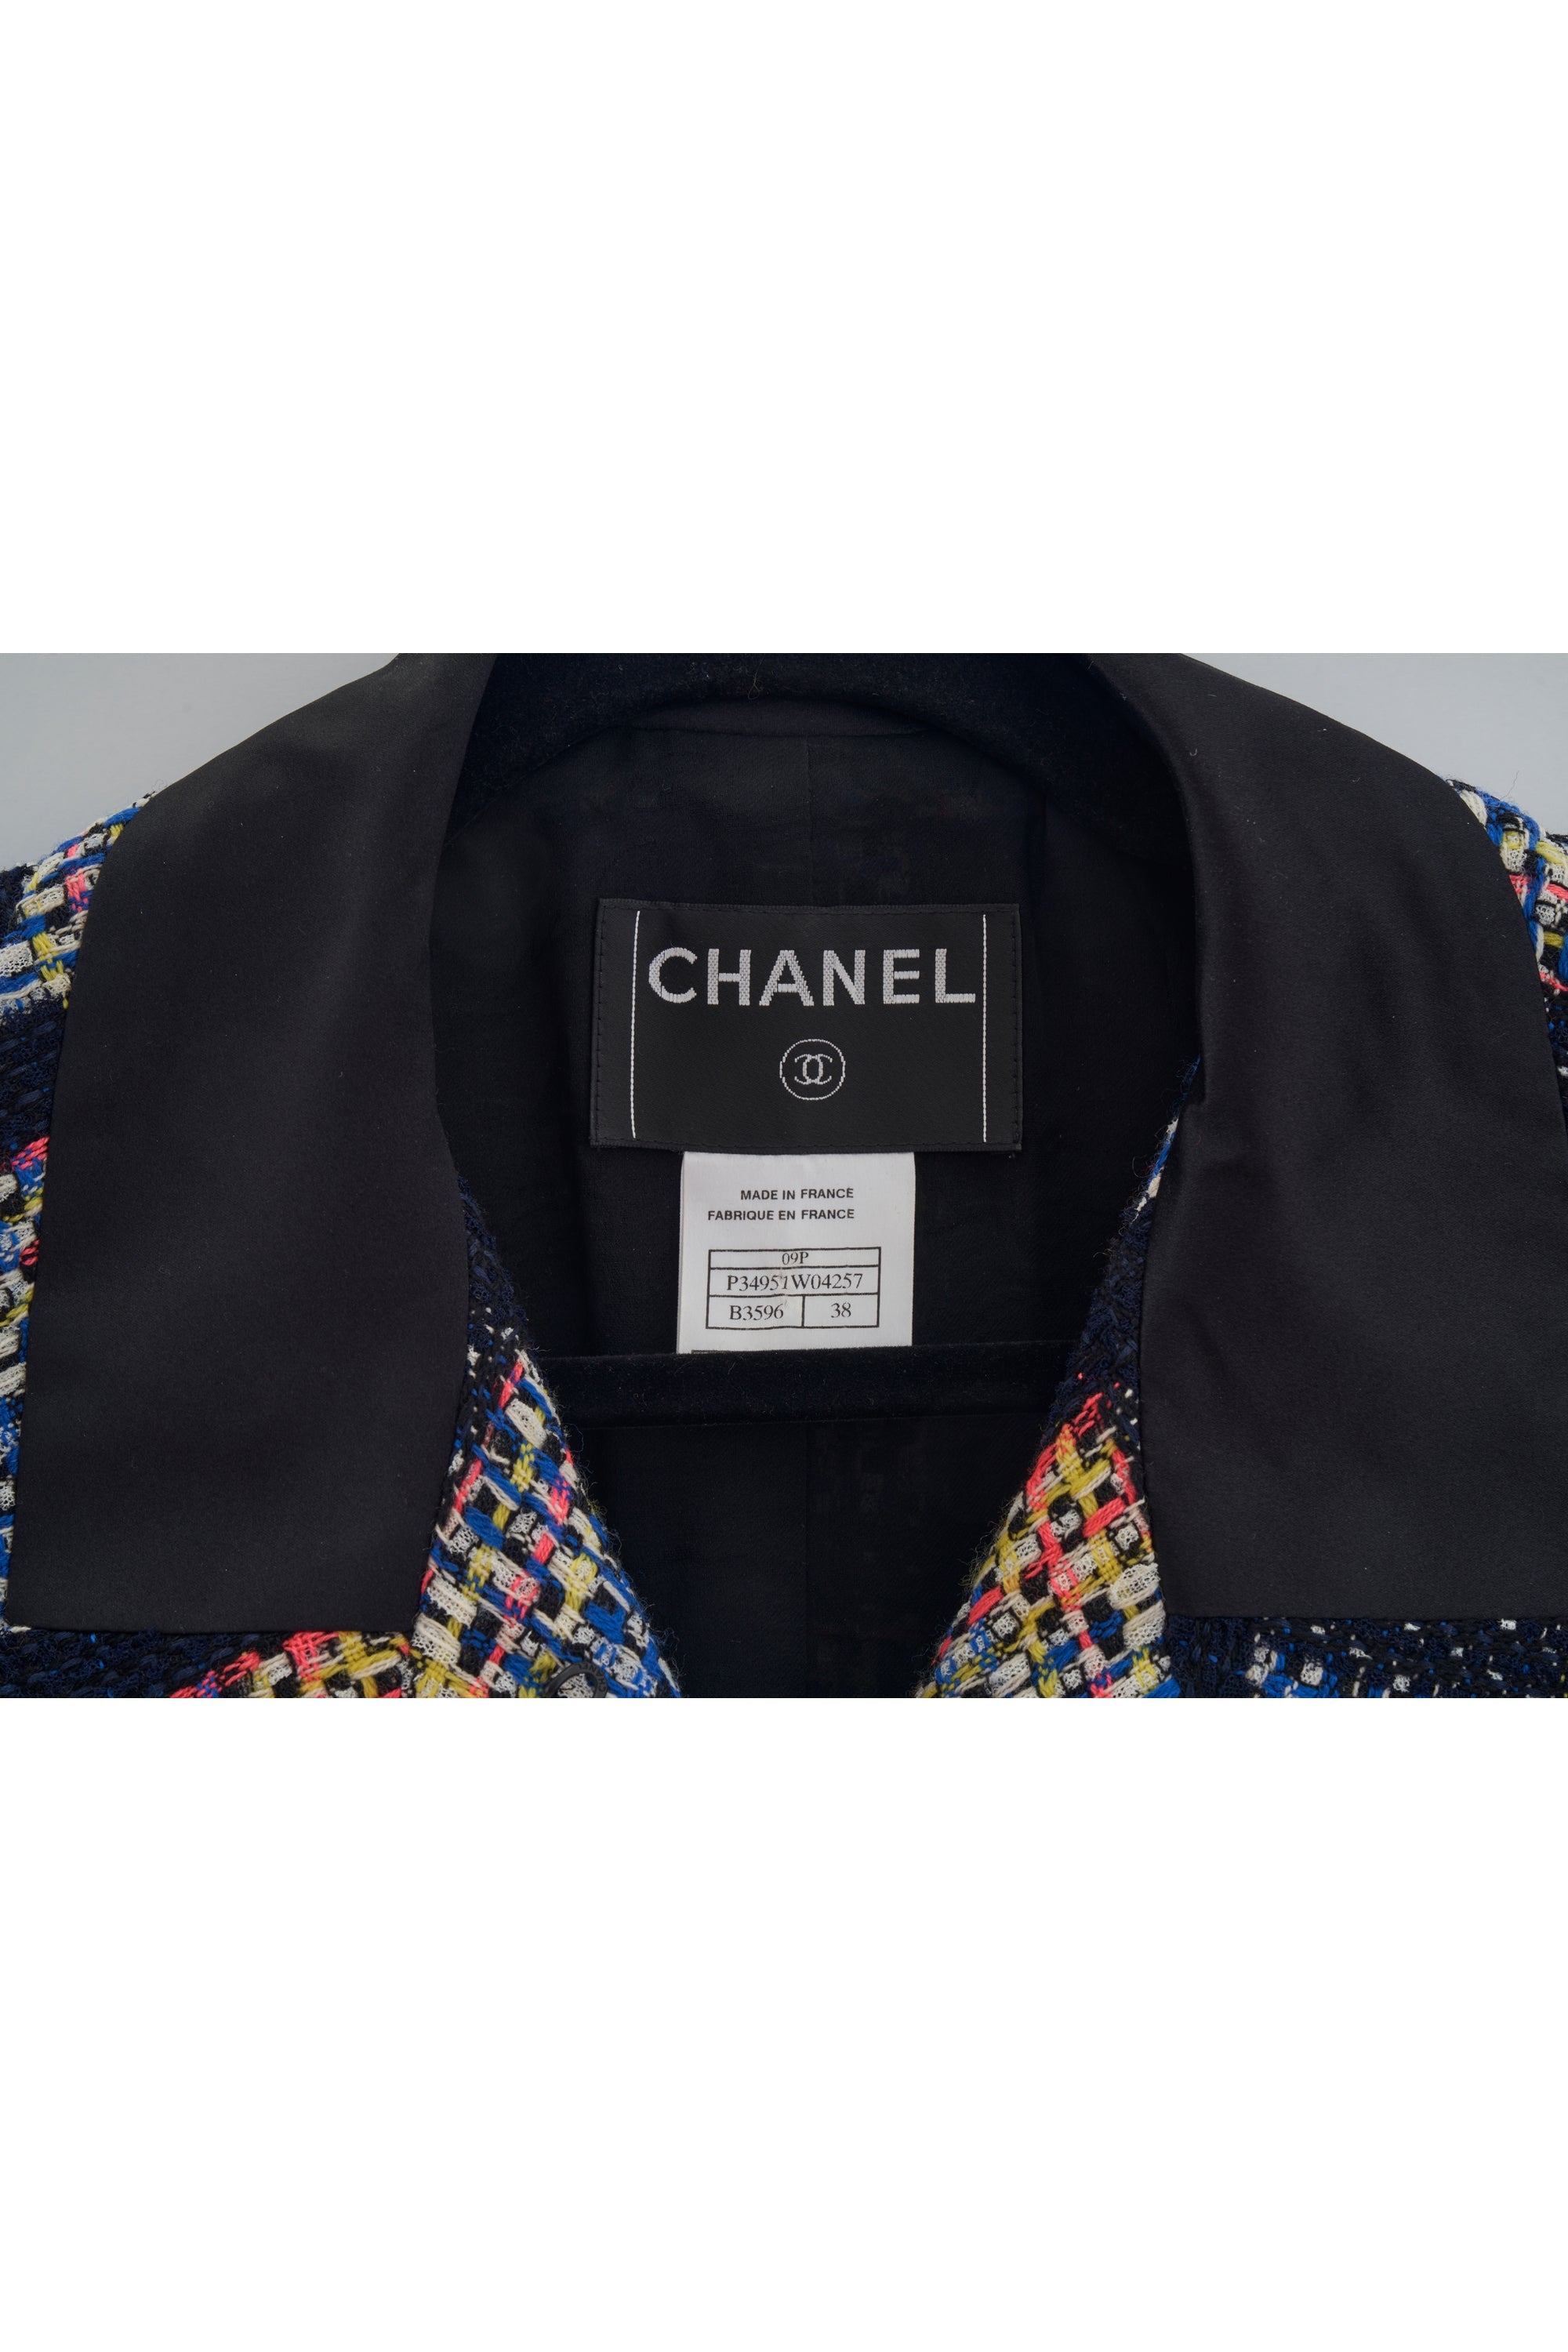 Chanel Short Sleeve Tweed Jacket